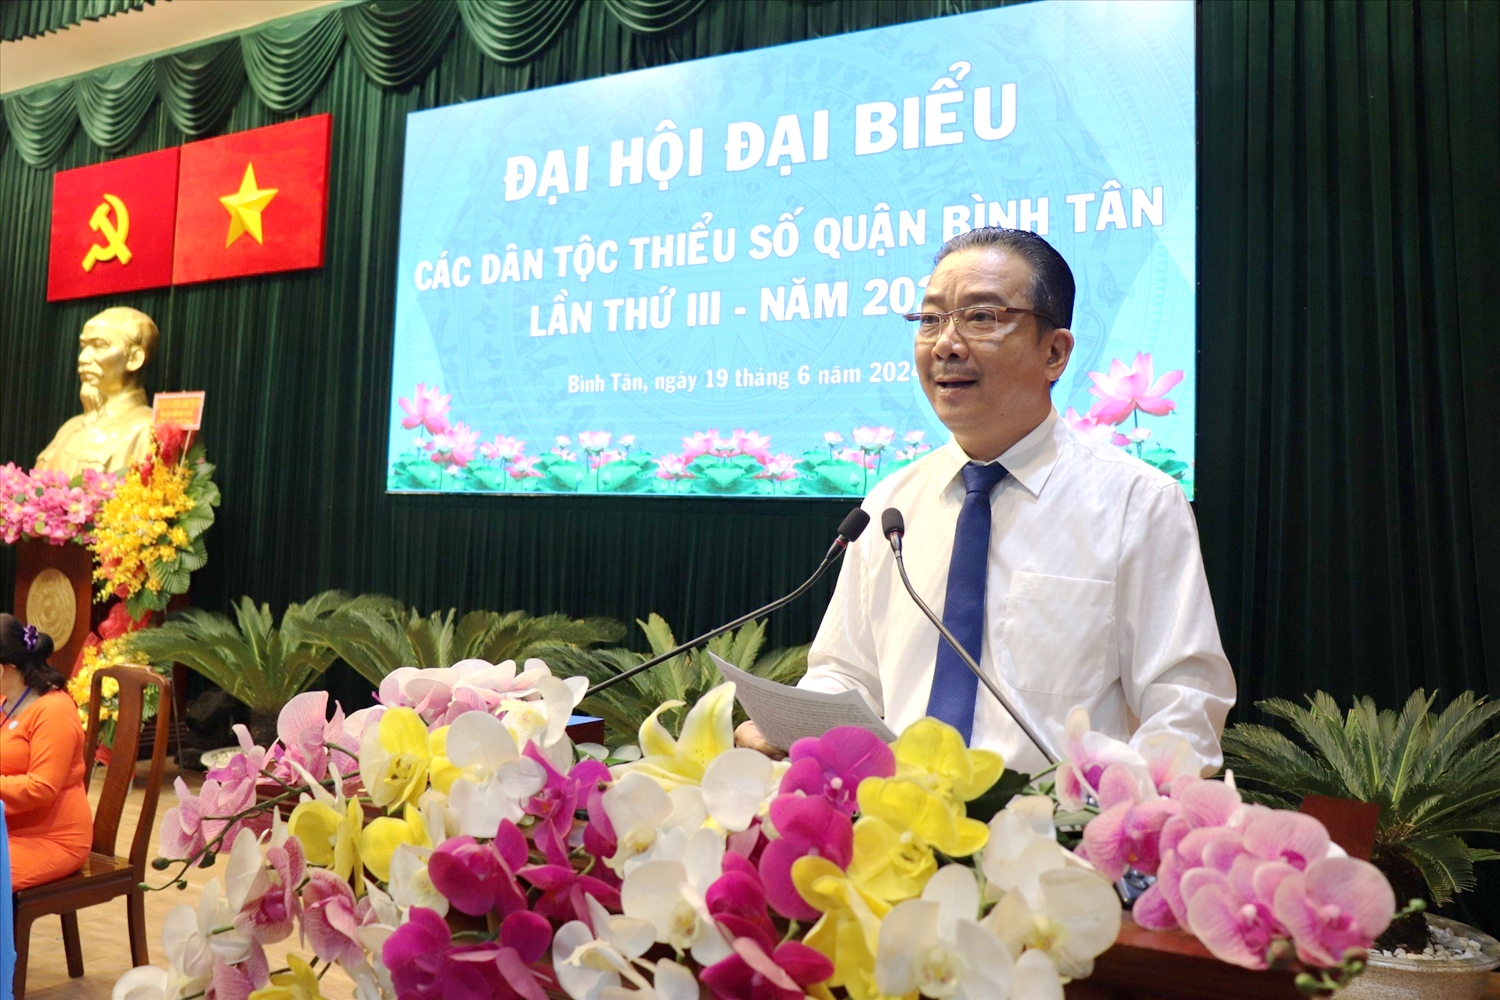 Ông Võ Trọng Nam - Phó Giám đốc Sở Văn hóa và Thể thao, thành viên Ban Chỉ đạo Đại hội Đại biểu các DTTS TP. Hồ Chí Minh lần thứ IV - năm 2024 phát biểu chỉ đạo tại Đại hội.